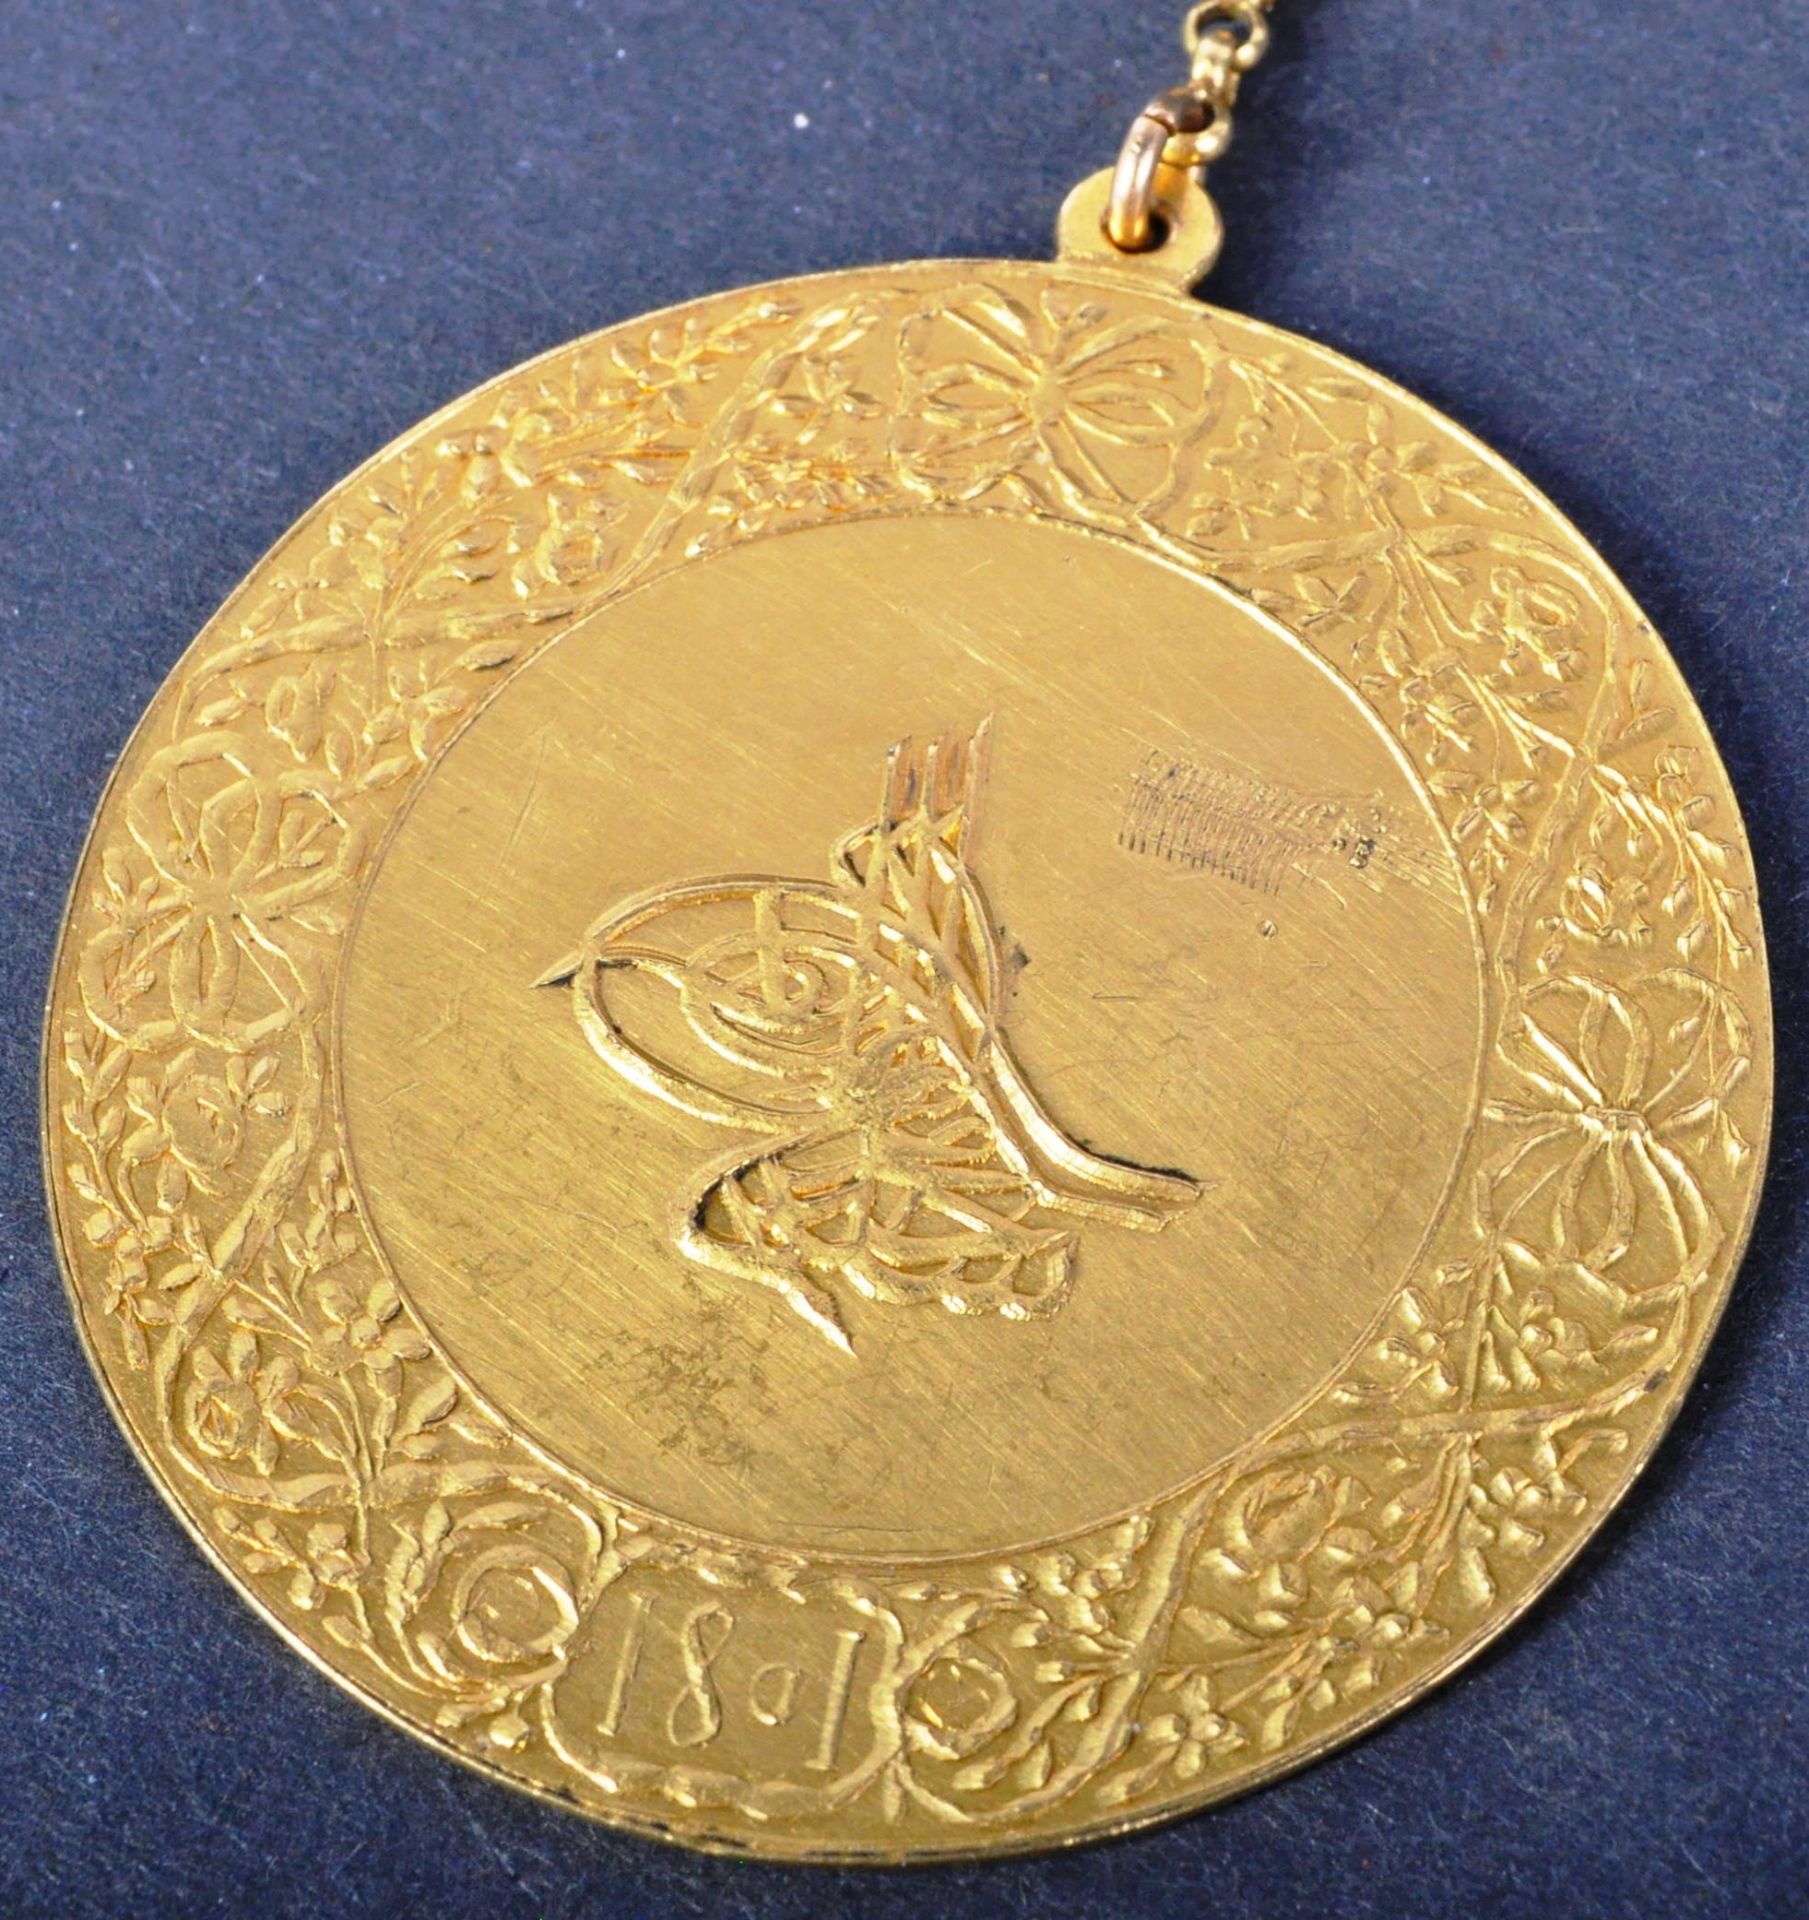 ORIGINAL SULTANS MEDAL FOR EGYPT GOLD MEDAL - Image 2 of 5